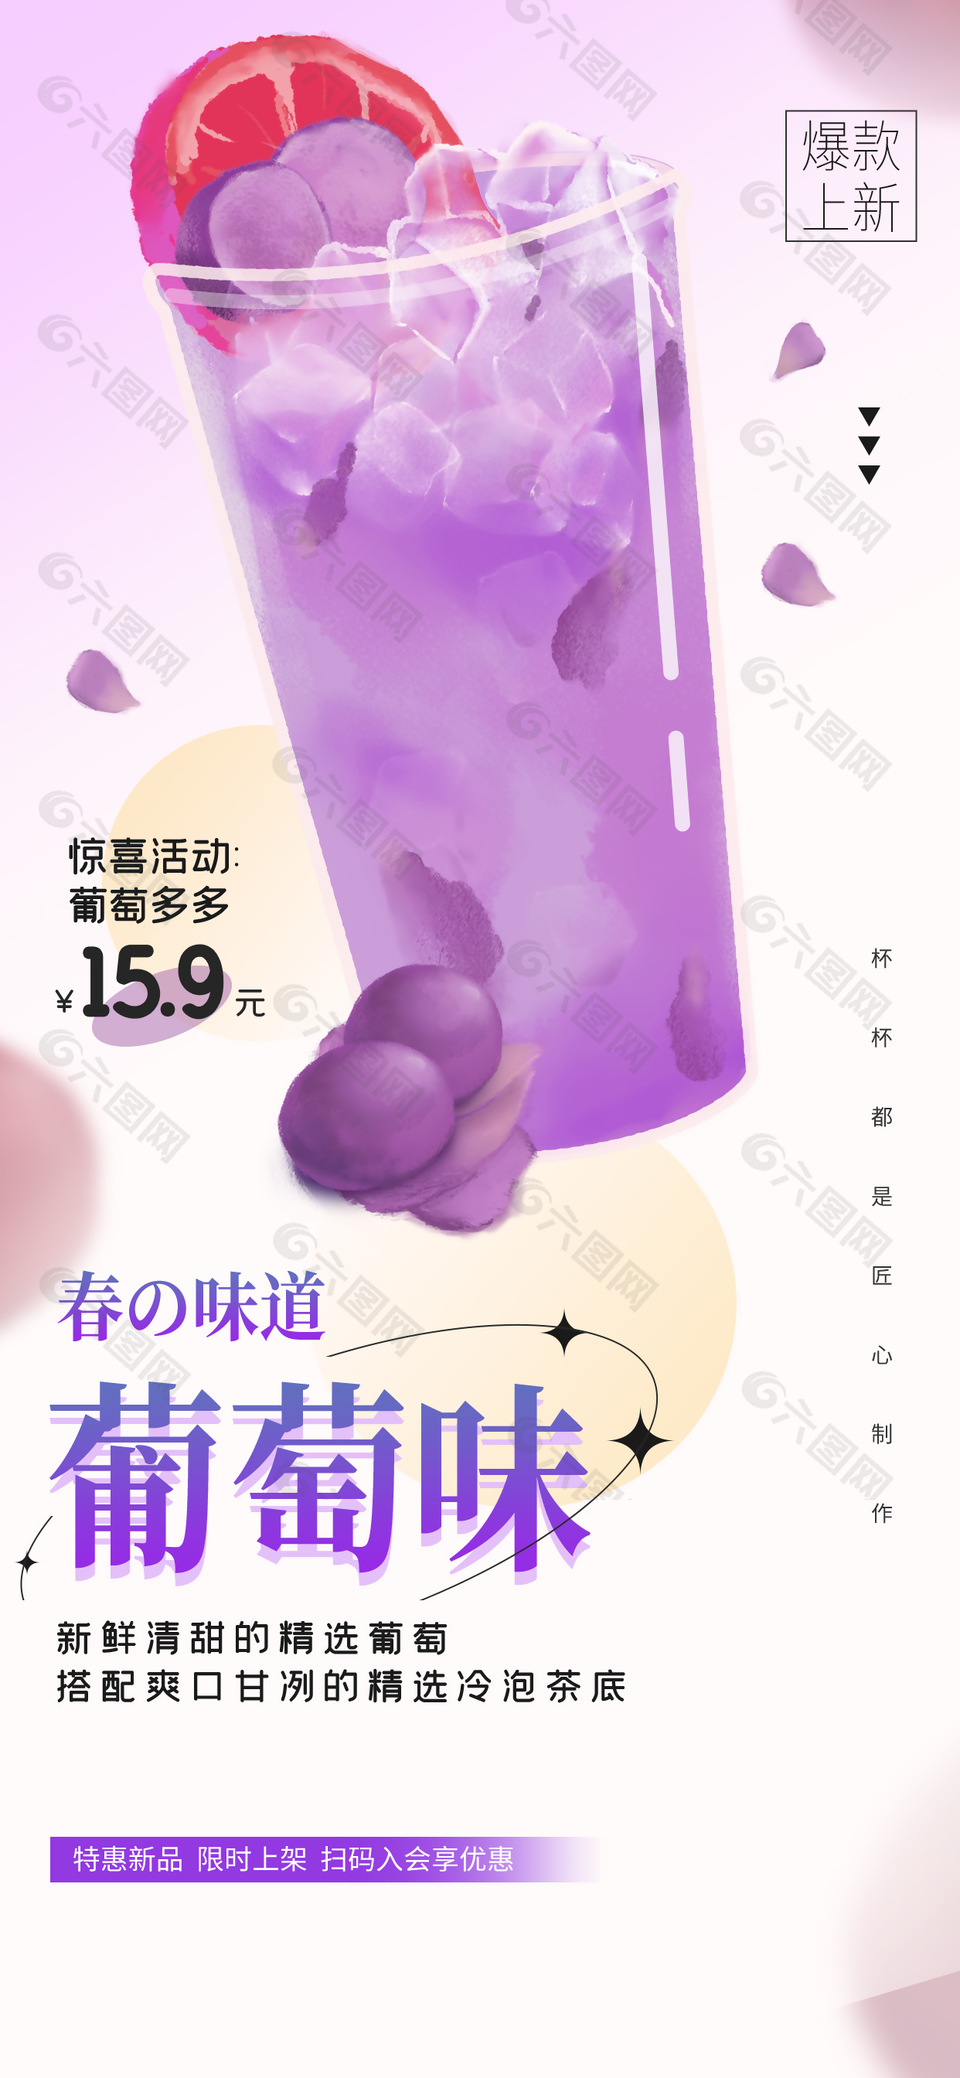 春季新品葡萄系列奶茶海报素材宣传